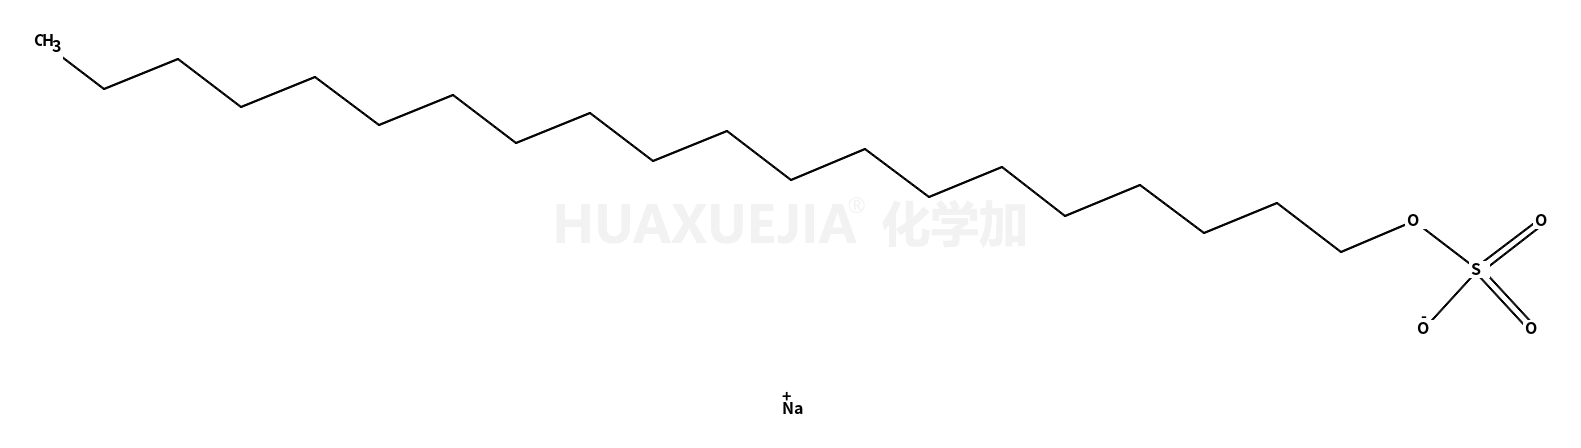 硫酸1-二十烷酯钠盐